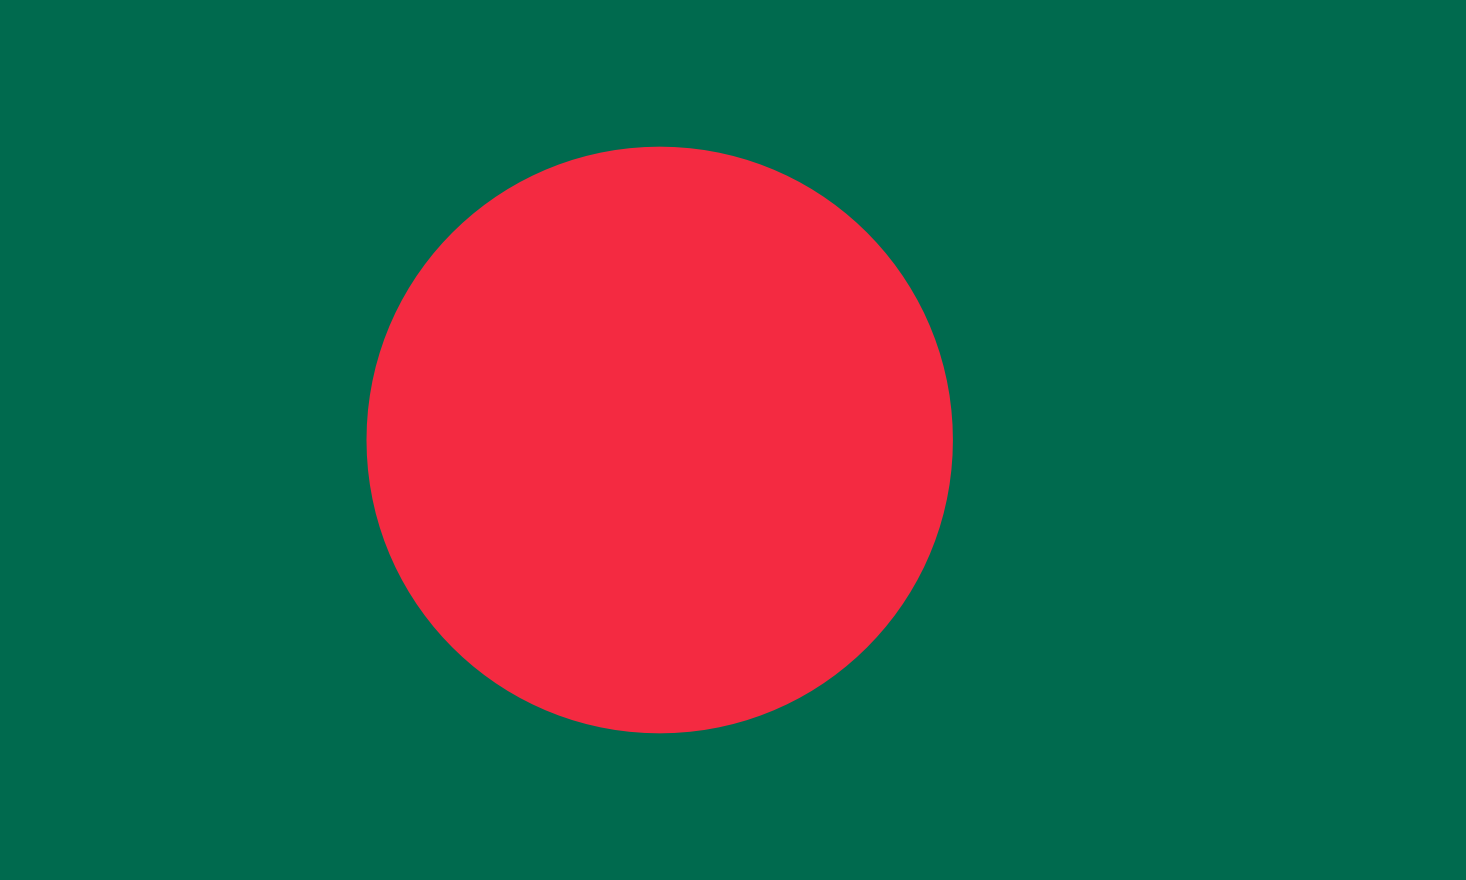 Imagem, bandeira do estado do estado da Bangladesh - na resolucao de 1466x880 - Sul da Ásia